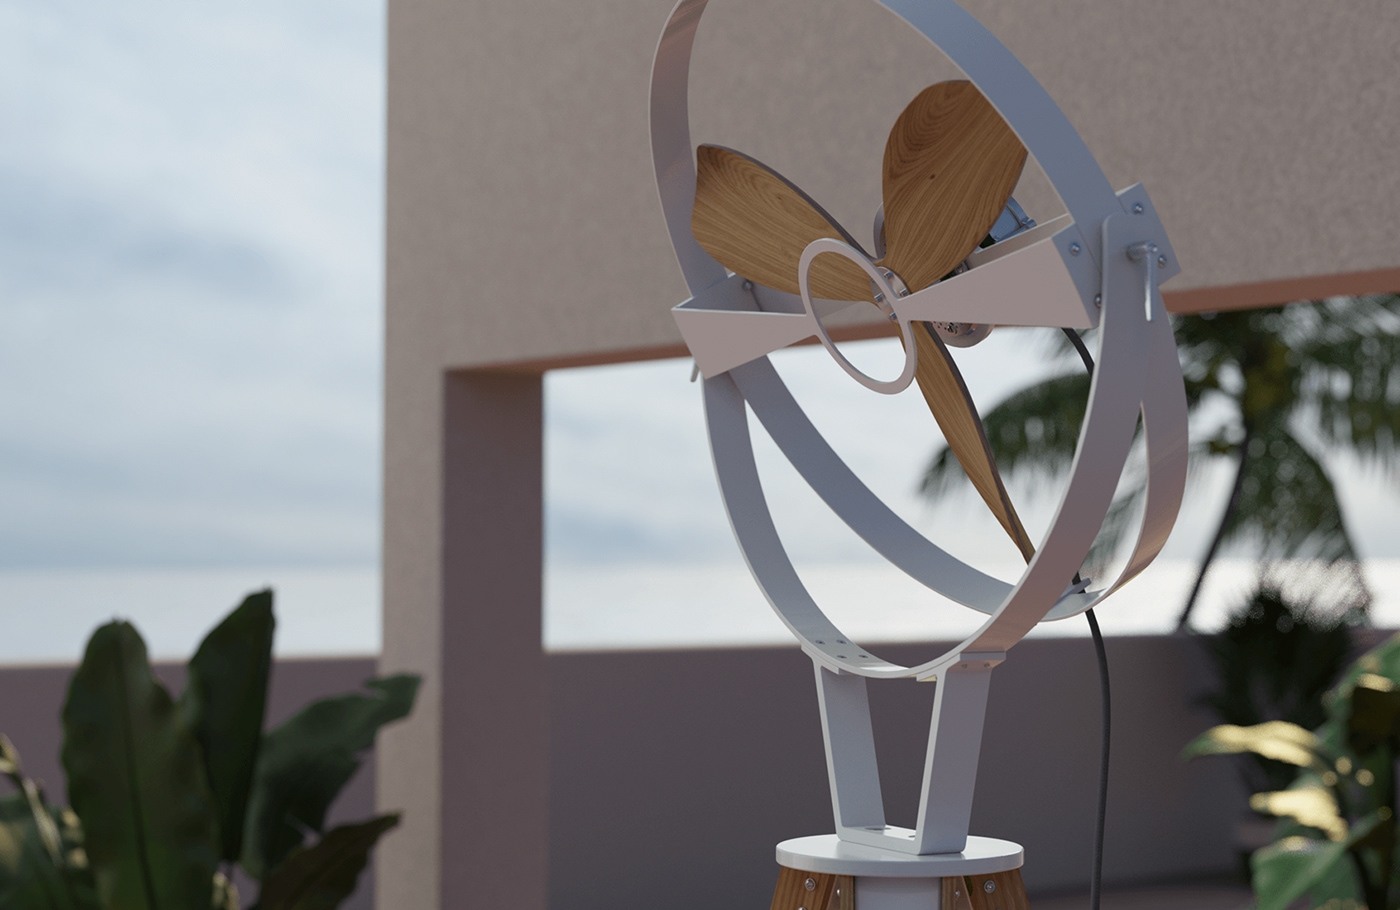 Aura design fan furniture design  minimalist design modern architecture modern furniture standing fan tripod fan ttato wooden fan